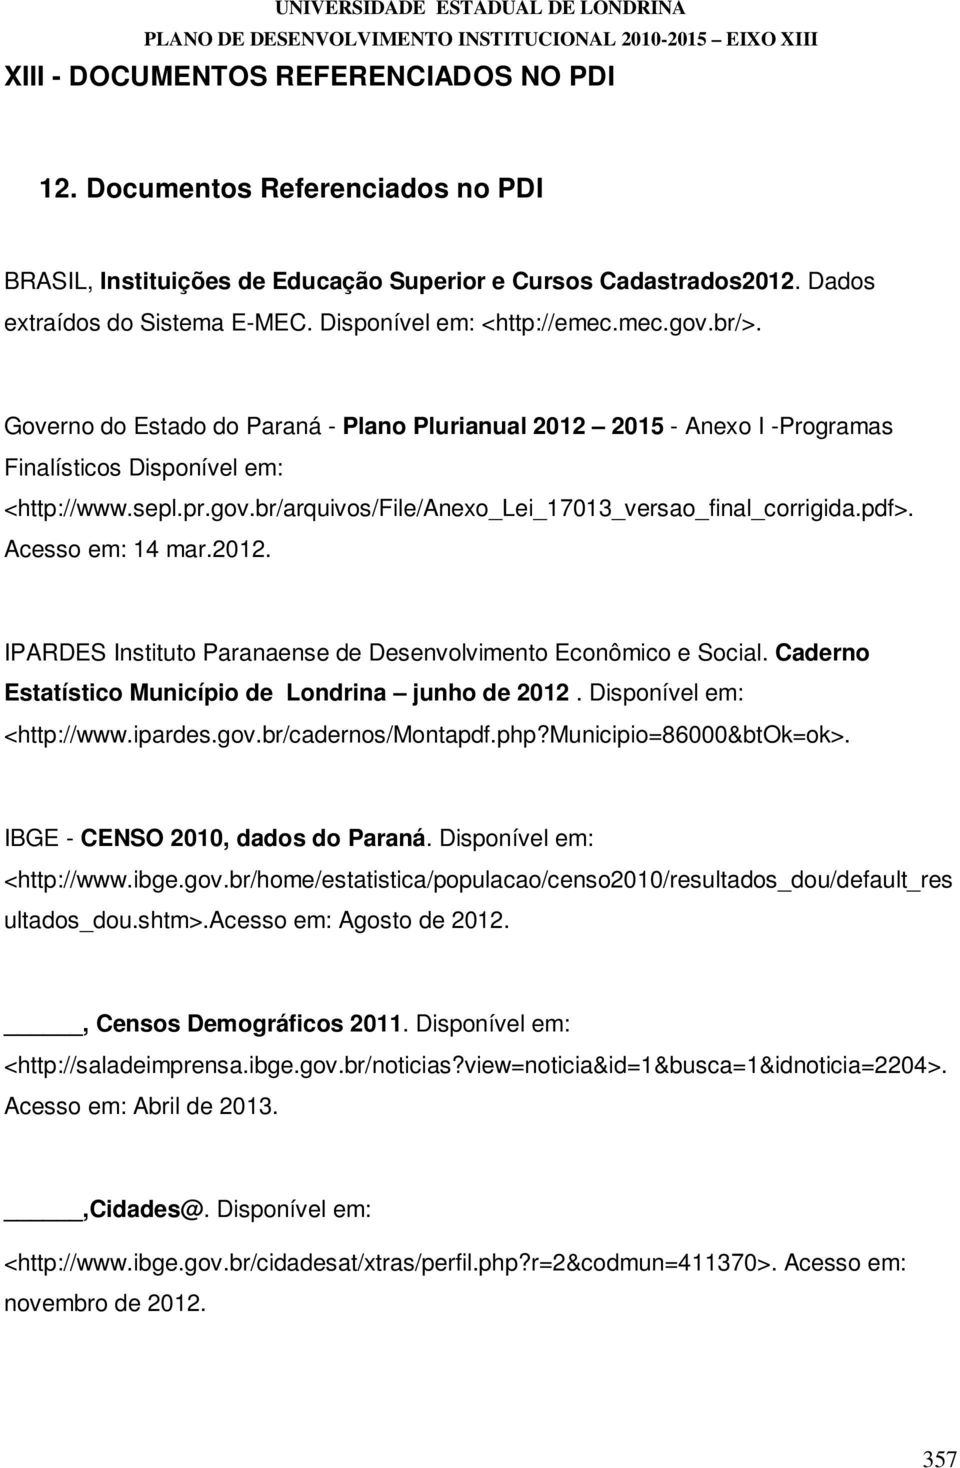 Governo do Estado do Paraná - Plano Plurianual 2012 2015 - Anexo I -Programas Finalísticos Disponível em: <http://www.sepl.pr.gov.br/arquivos/file/anexo_lei_17013_versao_final_corrigida.pdf>.